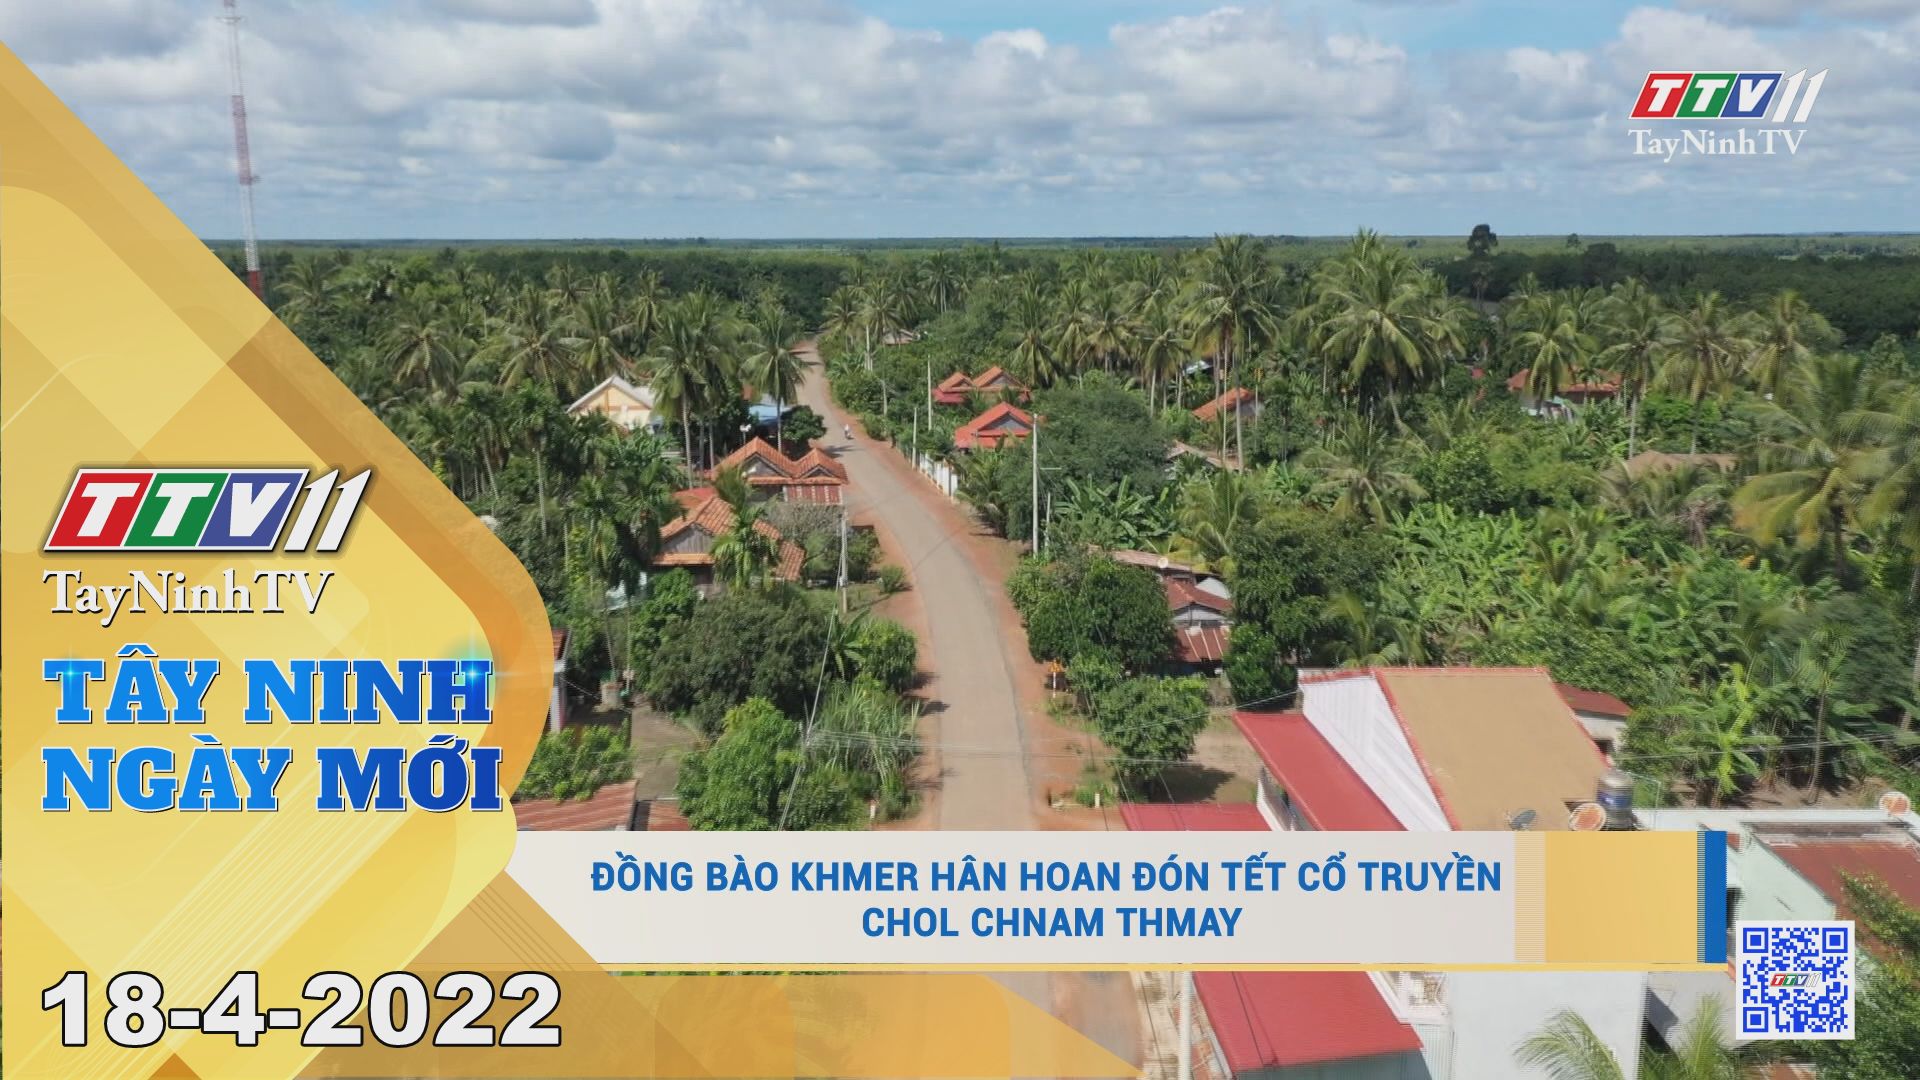 Tây Ninh ngày mới 18-4-2022| Tin tức hôm nay | TayNinhTV